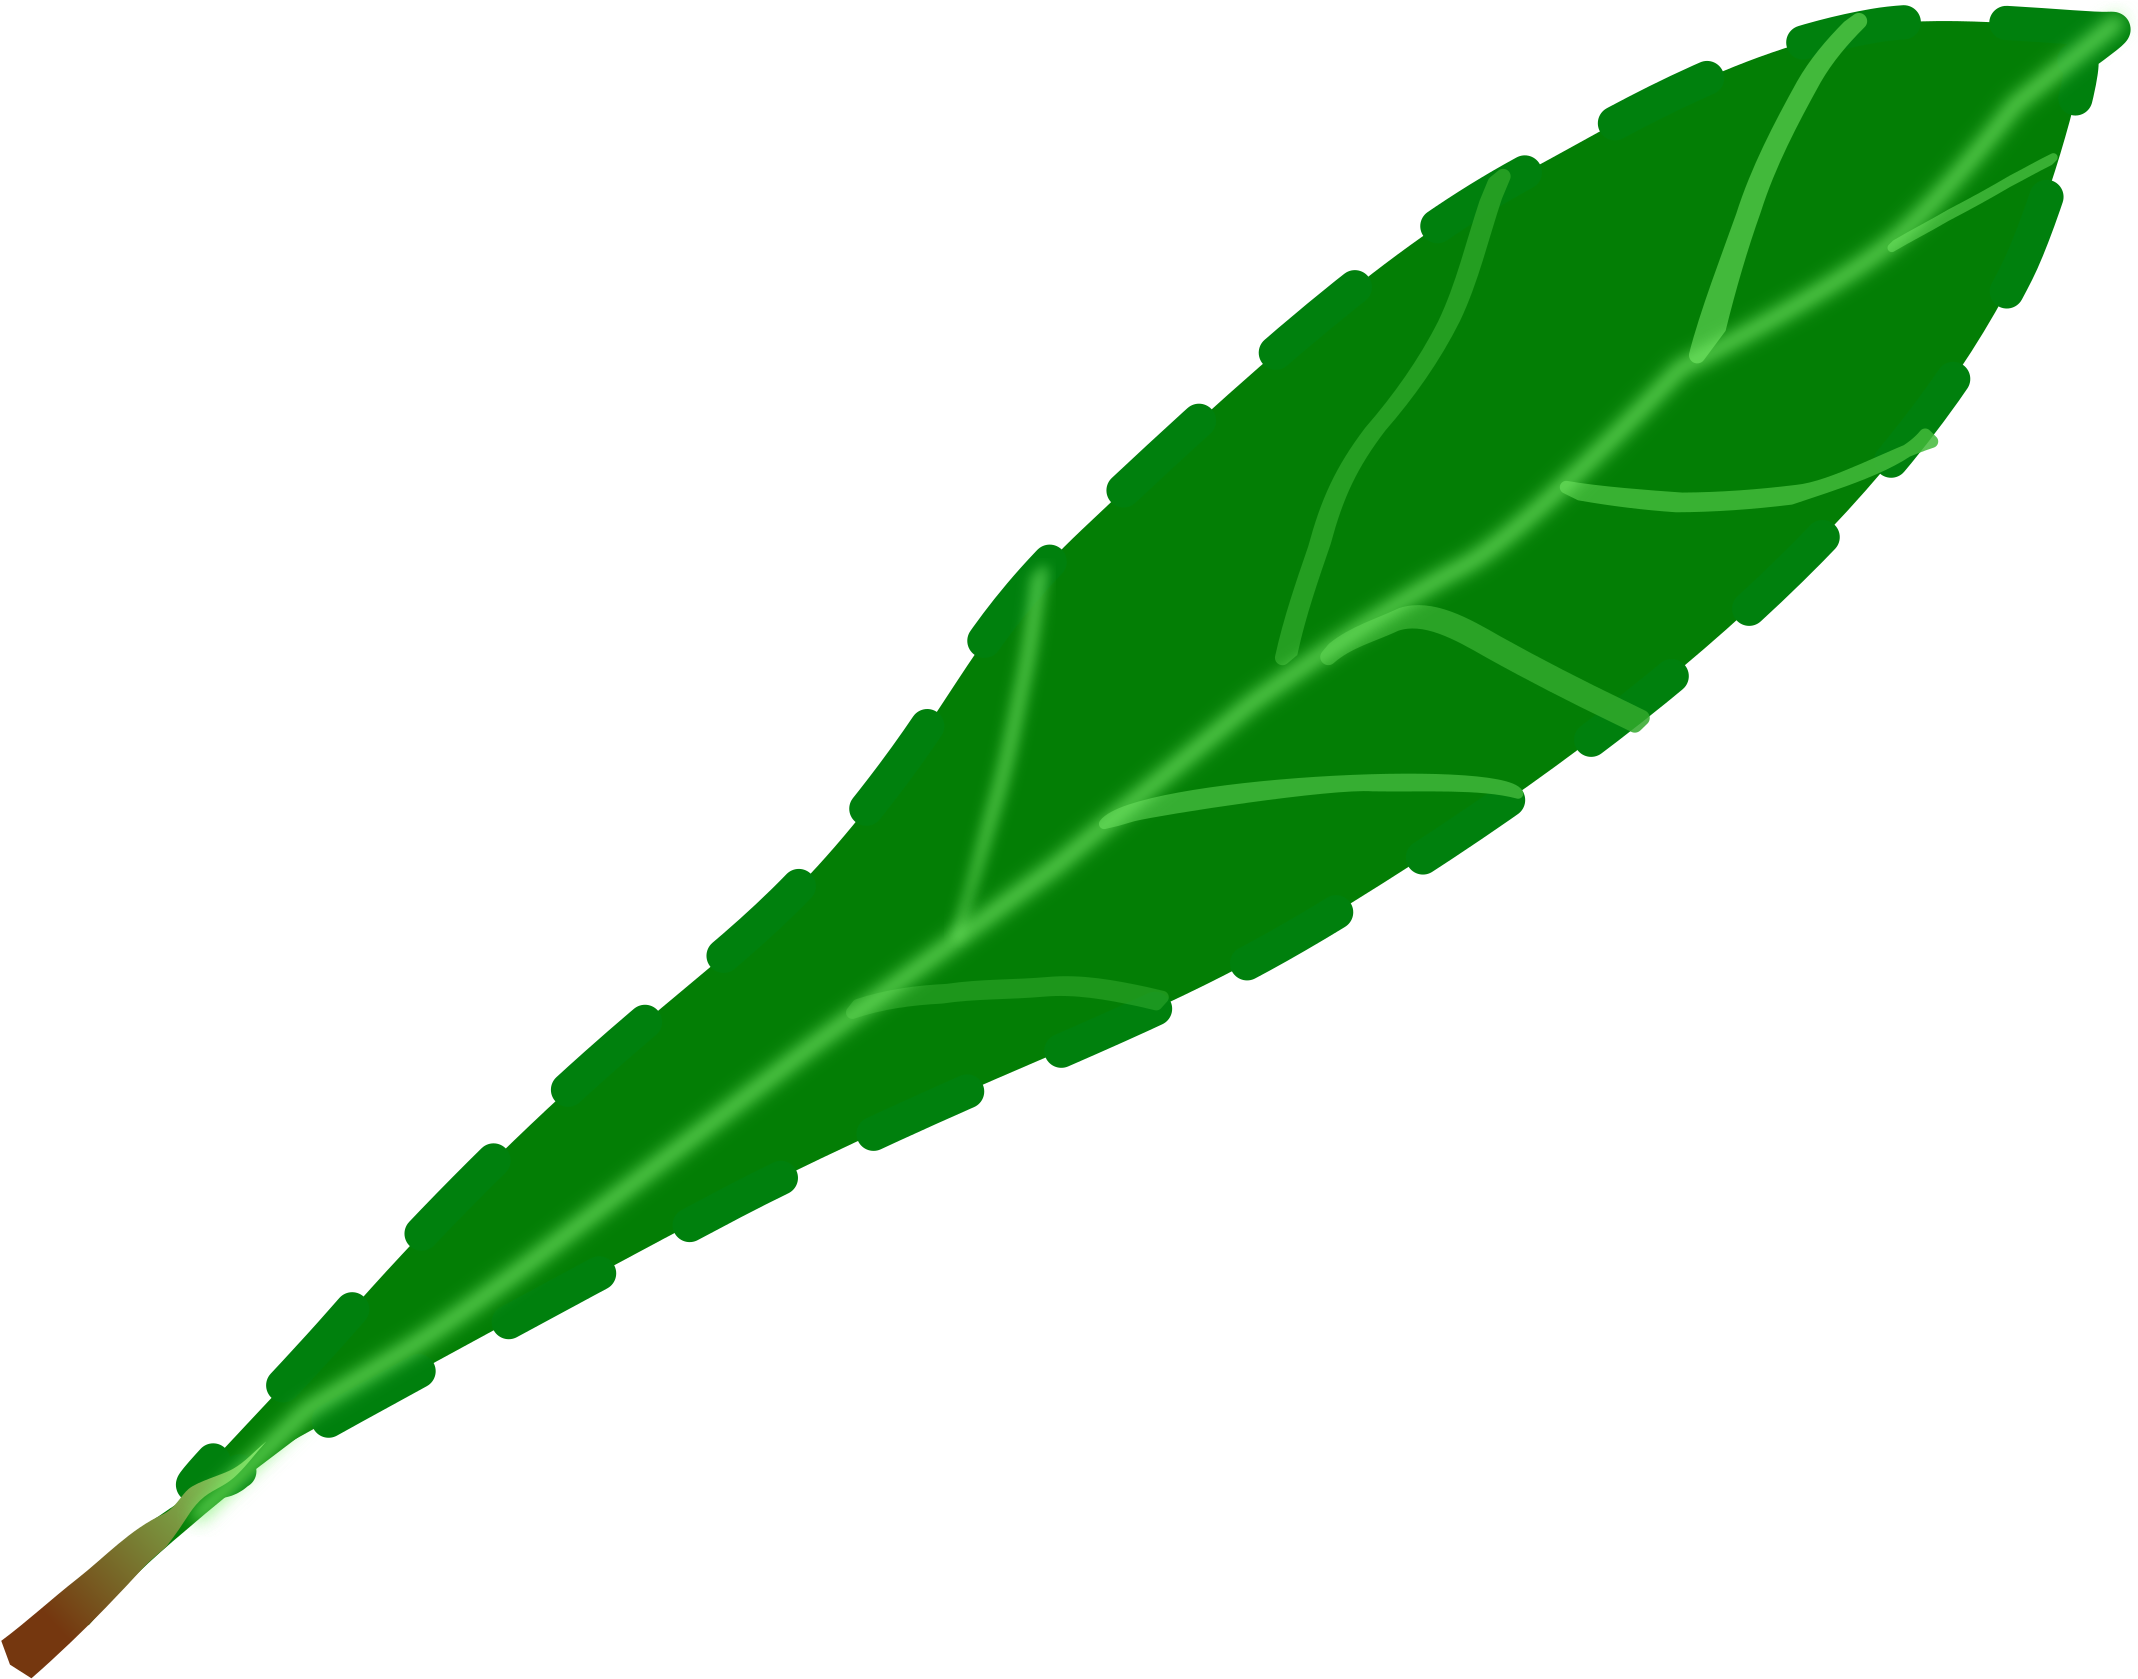 Green Leaf 2 - Single Green Leaf Clip Art (2400x2400)